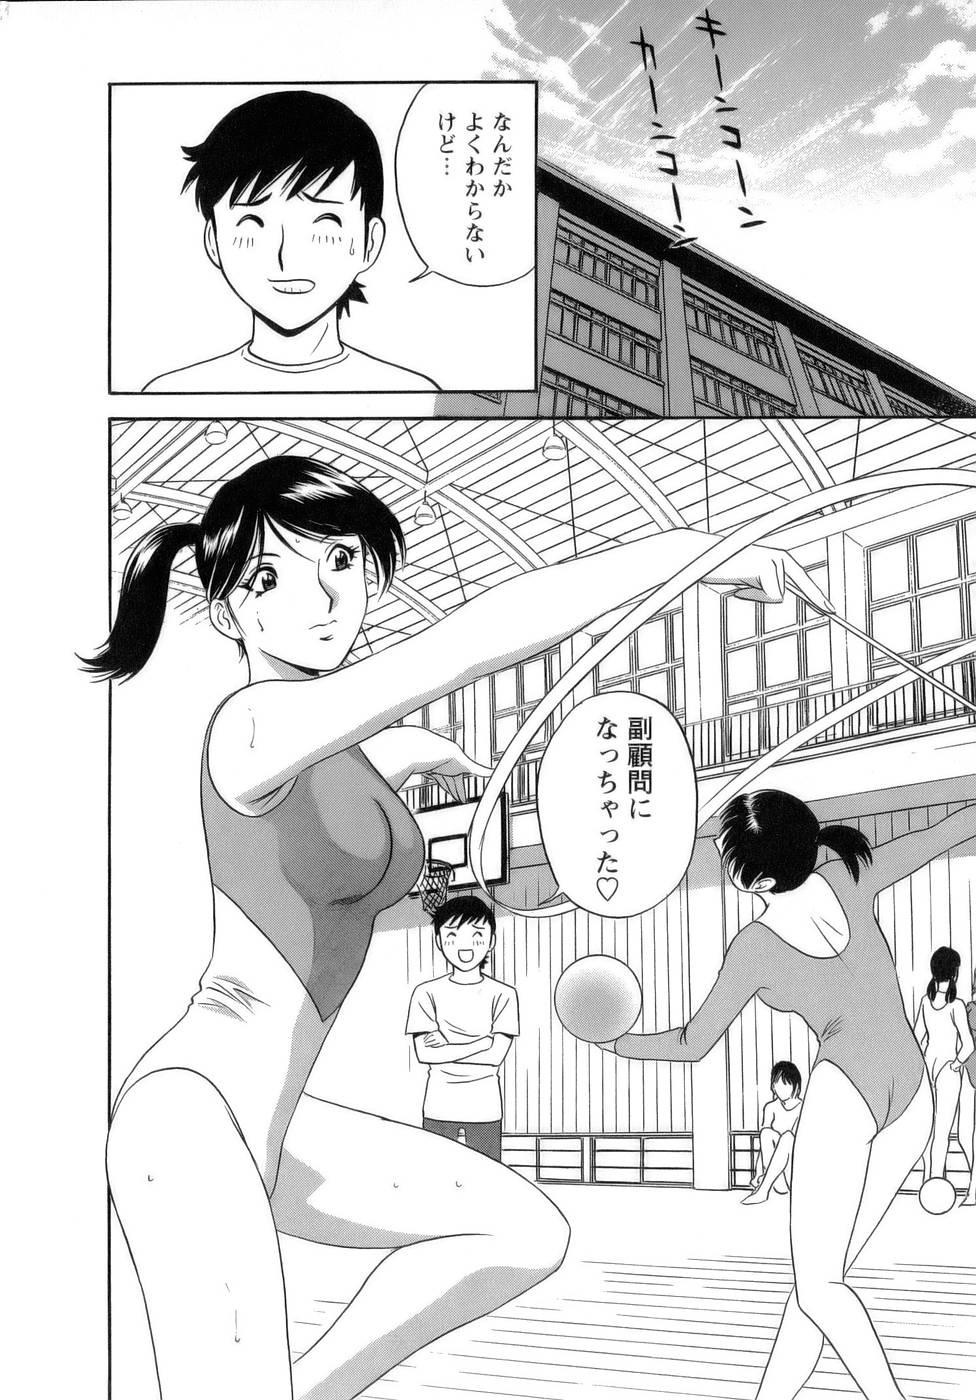 [Hidemaru] Mo-Retsu! Boin Sensei (Boing Boing Teacher) Vol.1 34